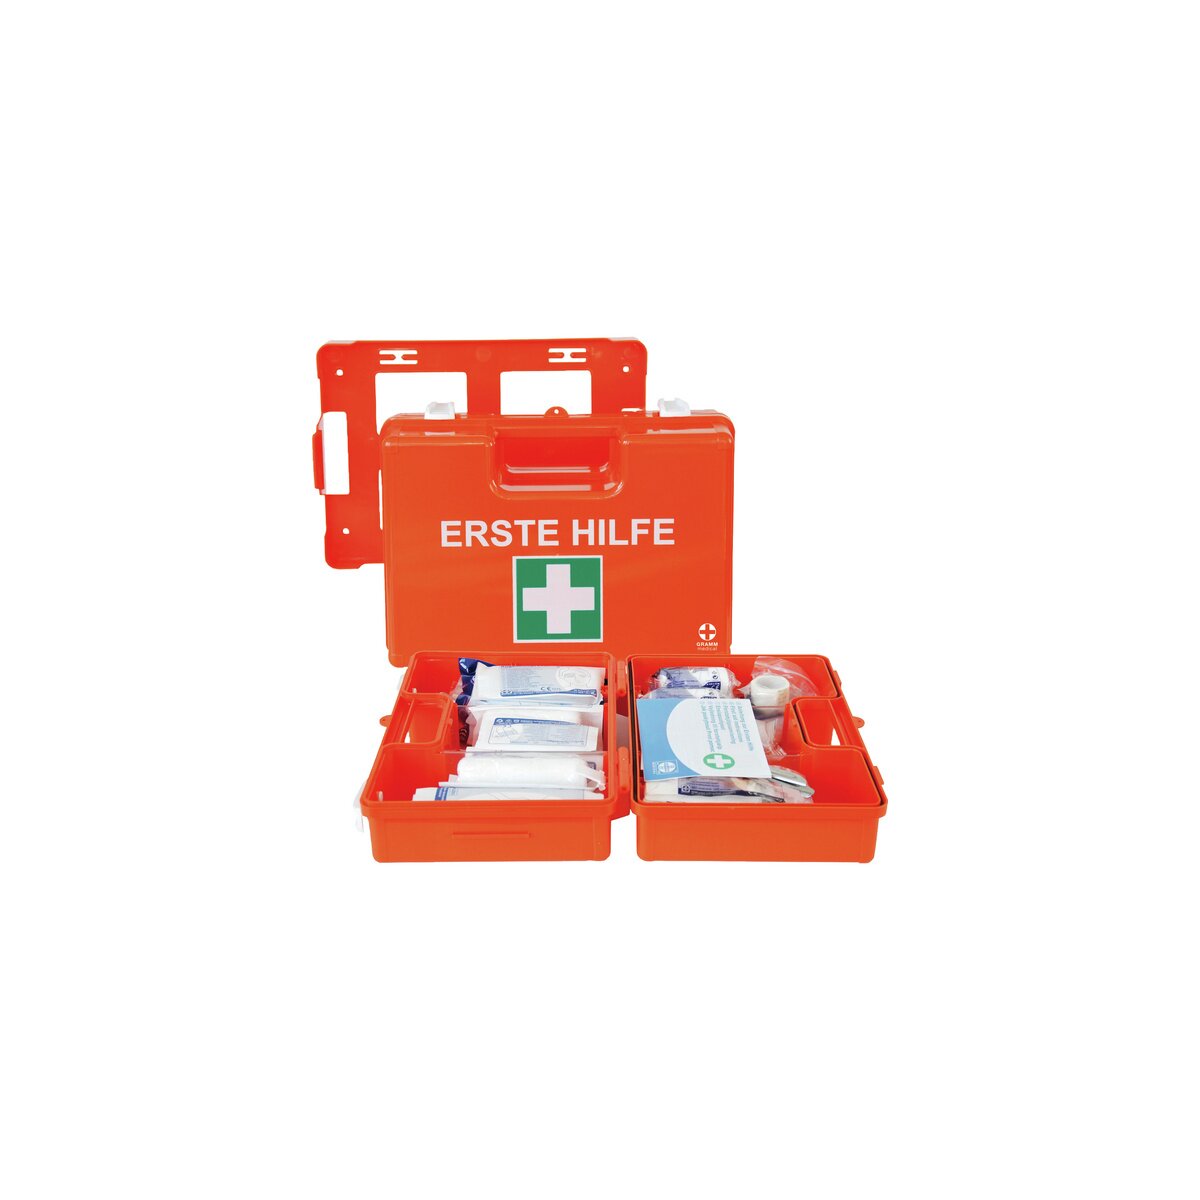 Erste-Hilfe-Set Mini, Verband-/Erste-Hilfe-Koffer, Verband-/Erste-Hilfe-Schränke, Augenspülung und Erste-Hilfe, Arbeitsschutz und Sicherheit, Laborbedarf